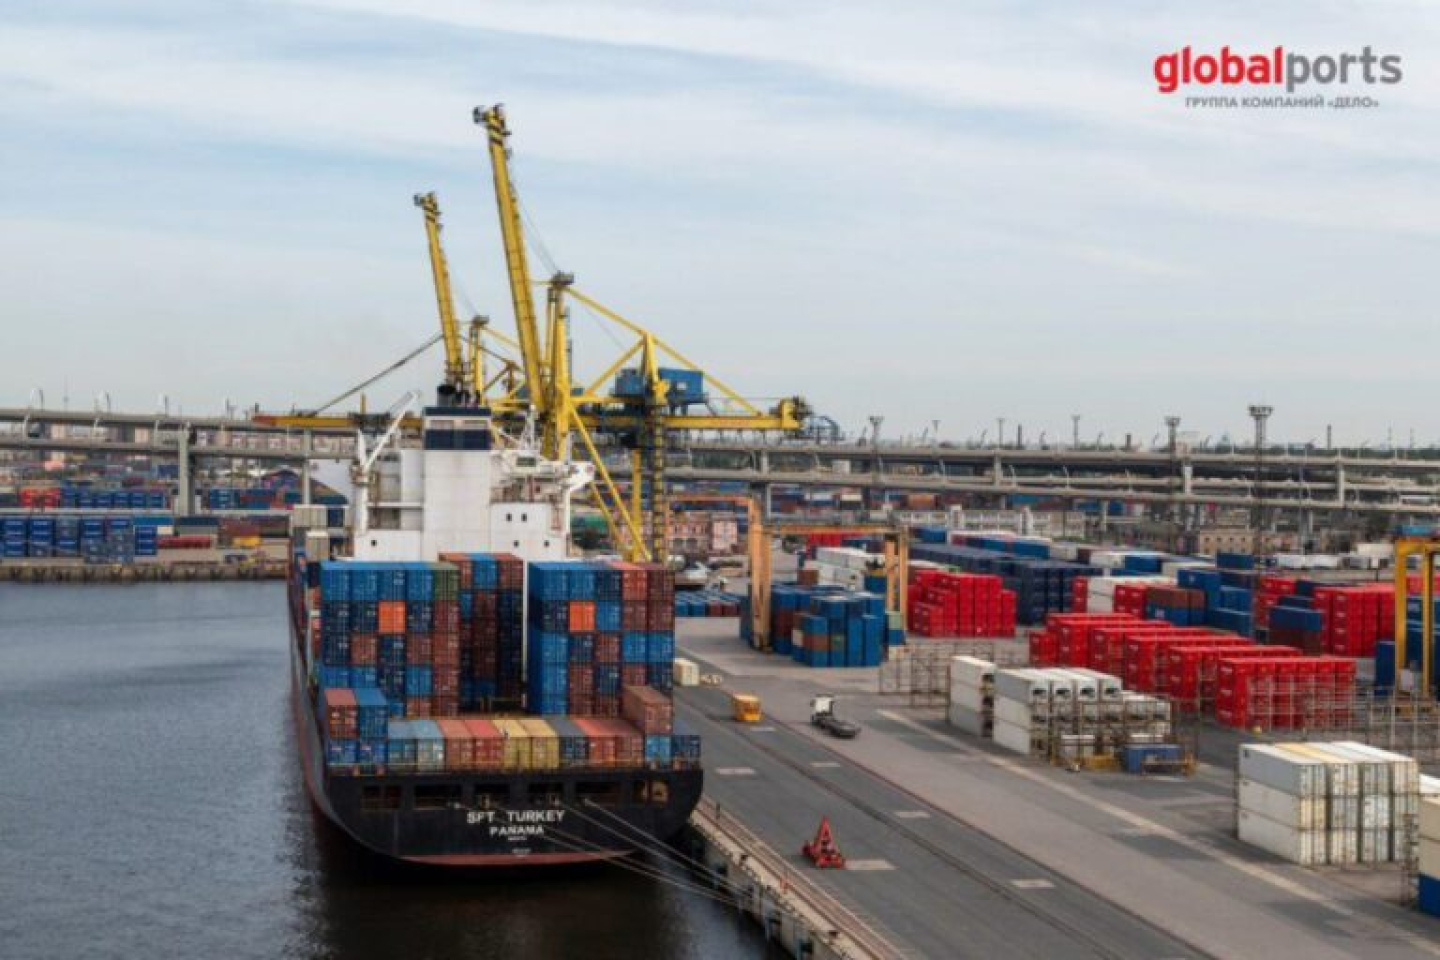 На ПЛП впервые зашел крупный контейнеровоз «SFT Turkey»